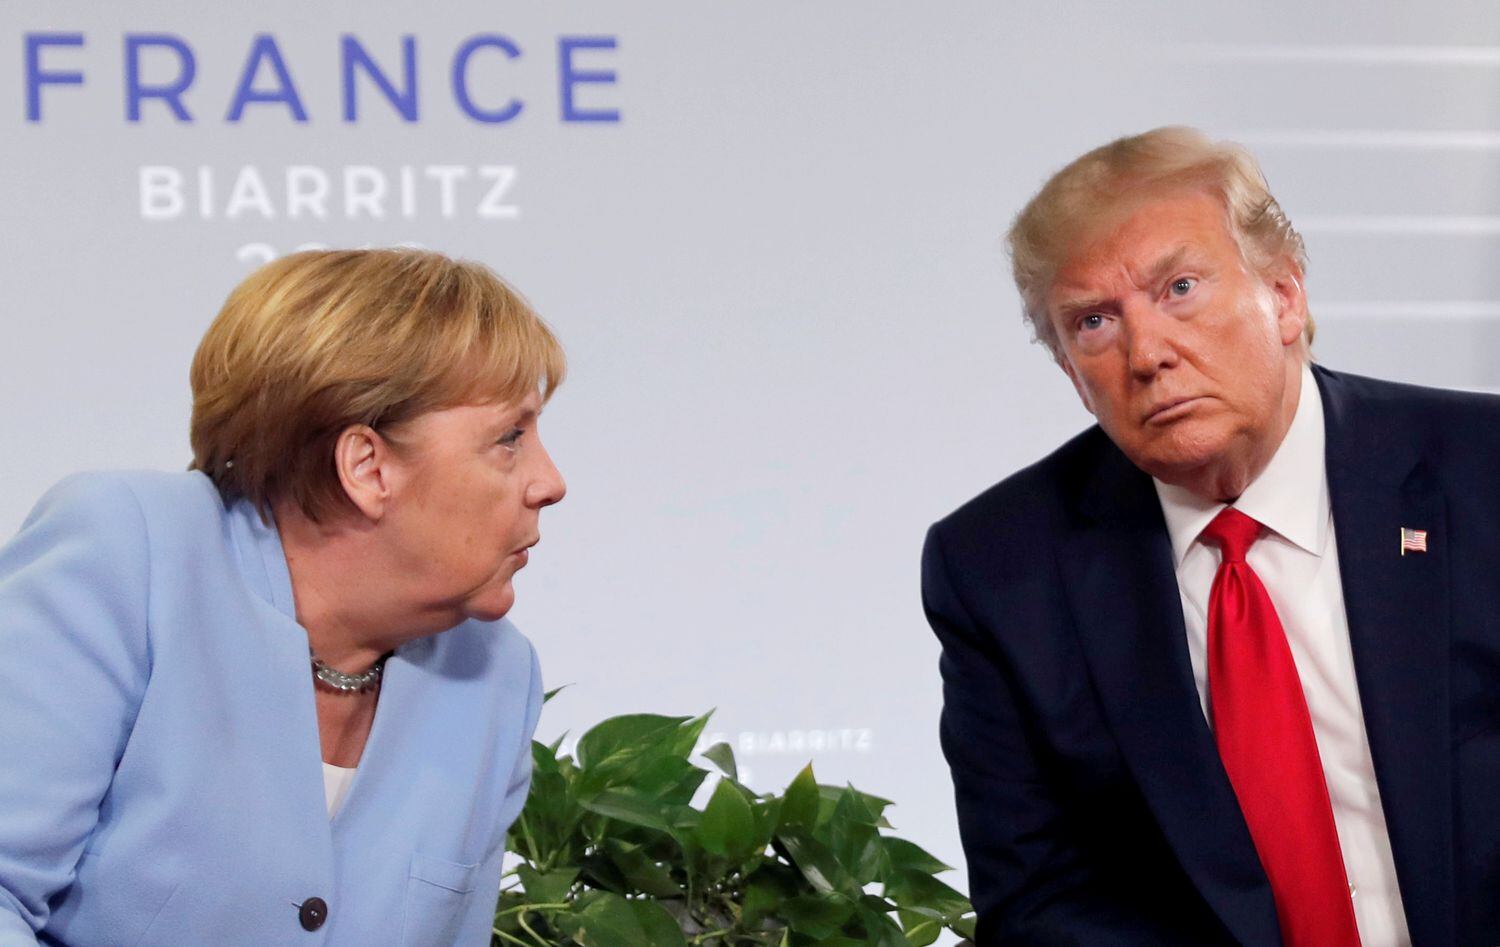 El presidente de EE UU, Donald Trump, y la canciller alemana, Angela Merkel, durante su reunión bilateral en el G7 de Biarritz el verano pasado.